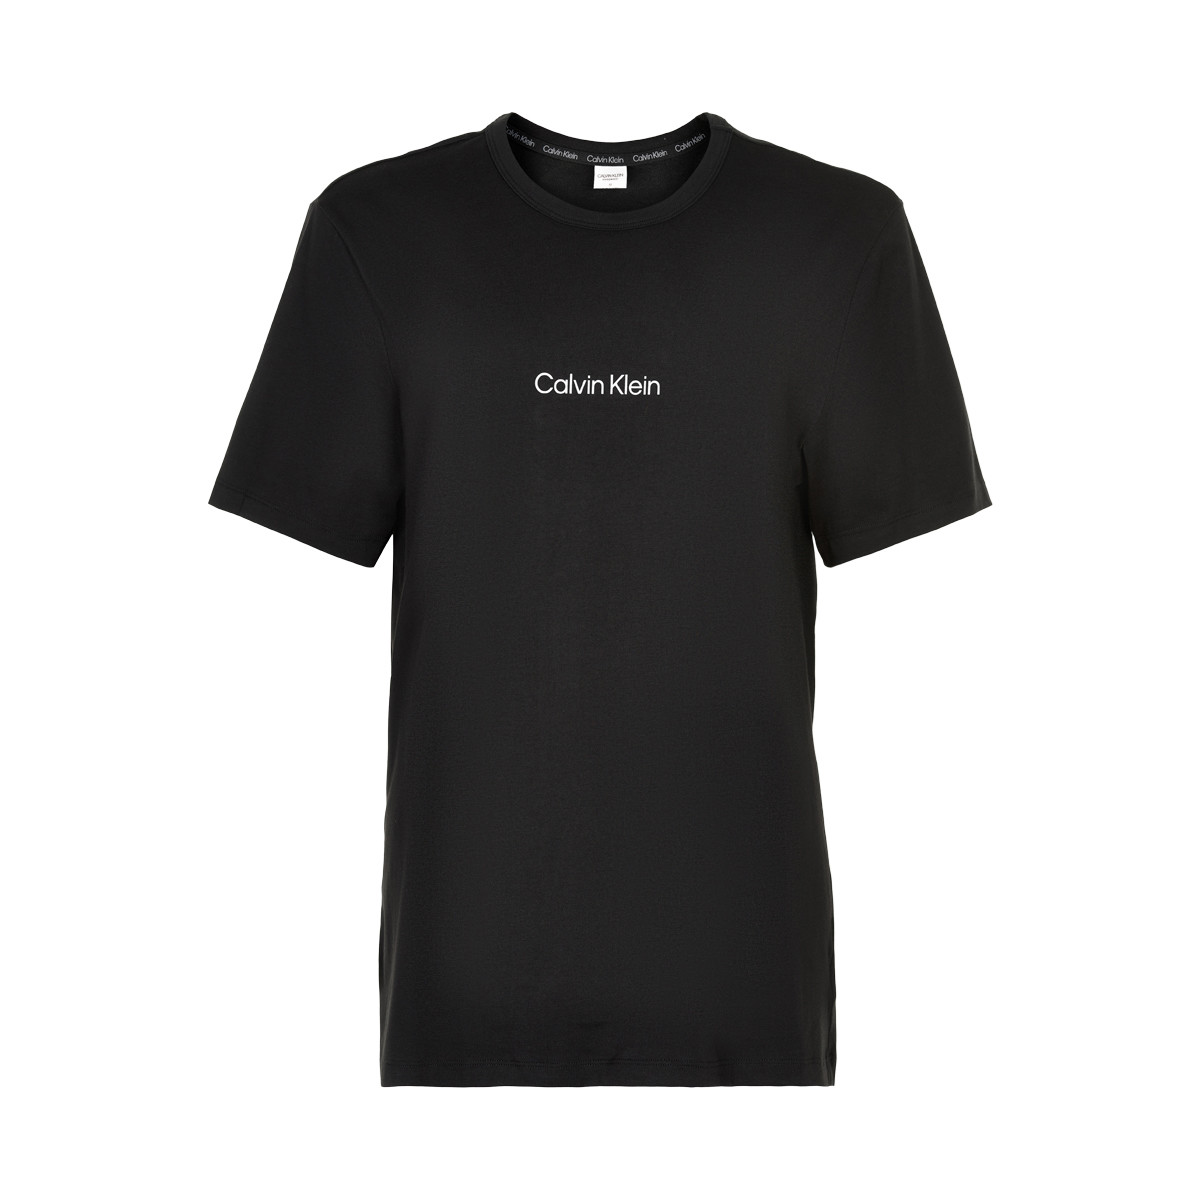 Se Calvin Klein T-shirt, Farve: Sort, Størrelse: M, Dame hos Netlingeri.dk